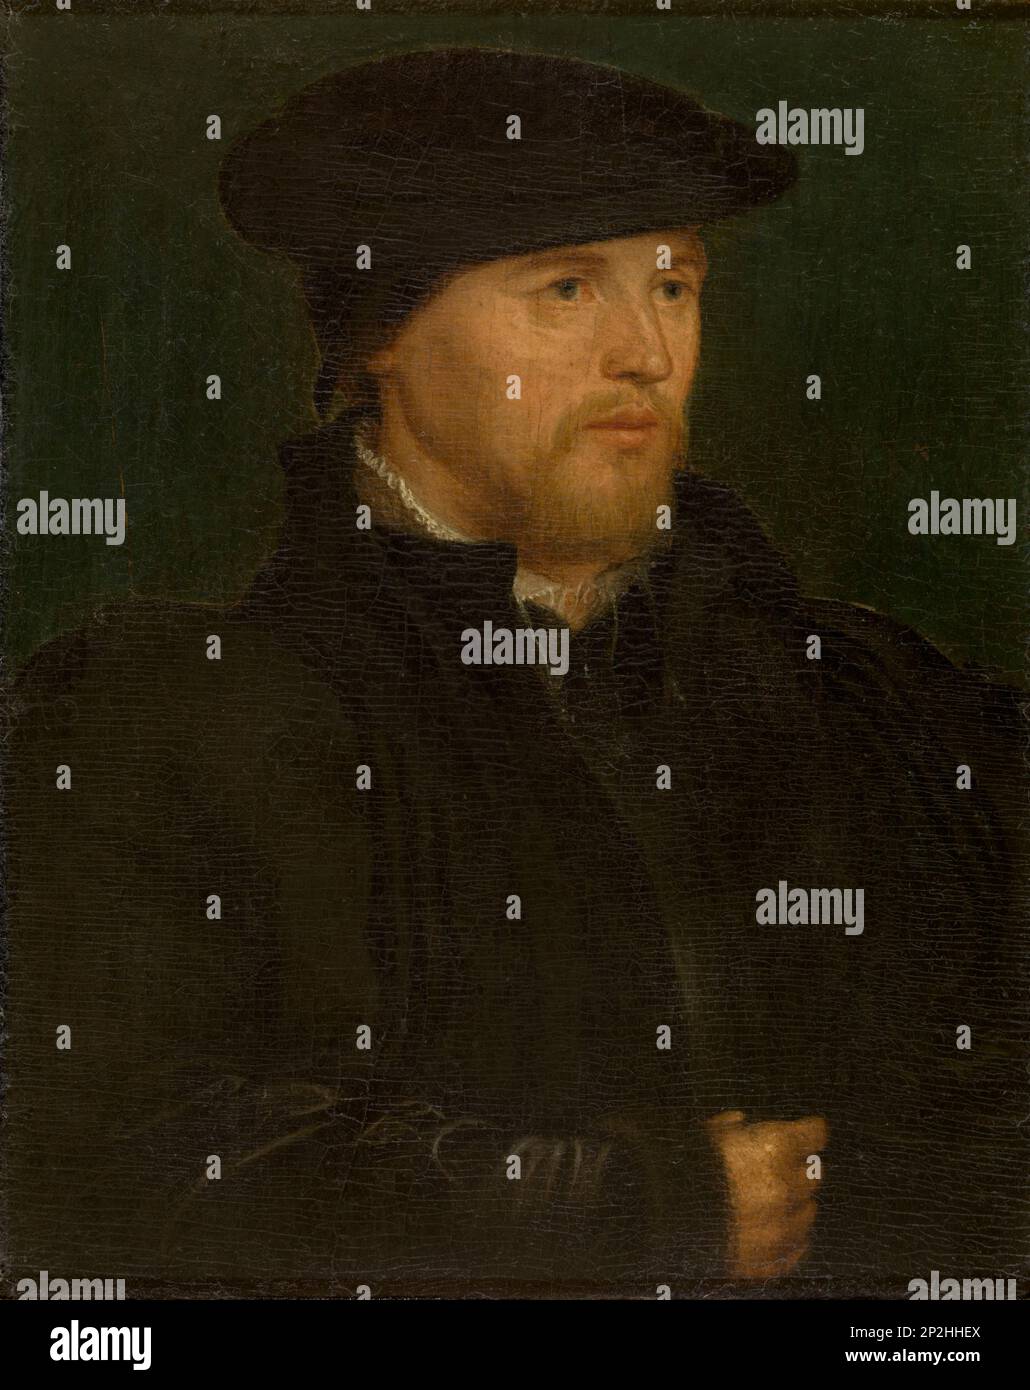 Ritratto di un uomo. Si trova nella collezione del Museo reale delle Belle Arti di Anversa. Foto Stock